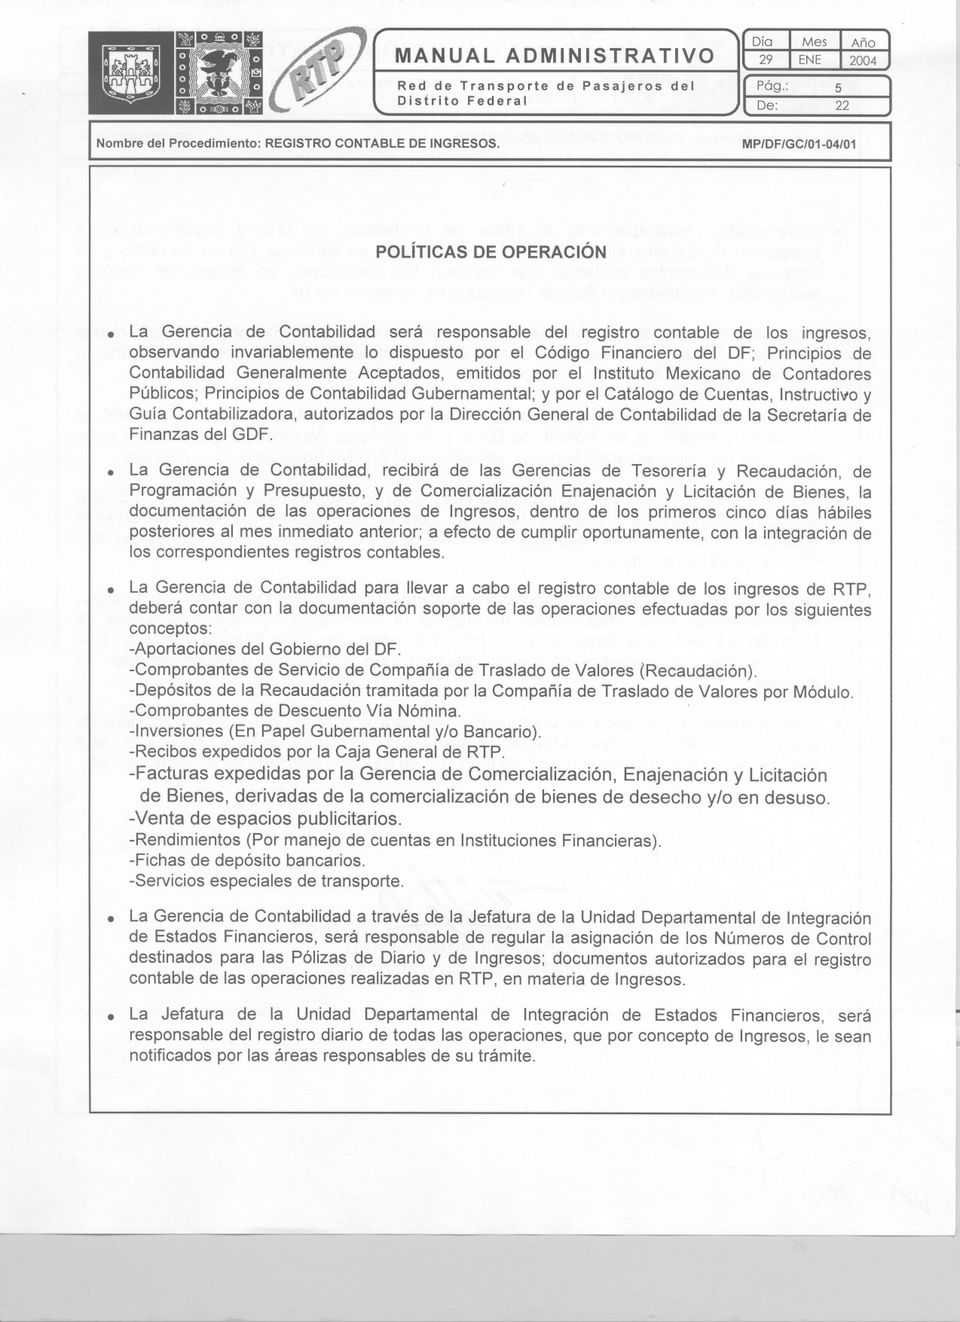 Aceptados, emitidos por el nstituto Mexicano de Contadores Públicos; Principios de Contabilidad Gubernamental; y por el Catálogo de Cuentas, nstructivo y Guía Contabilizadora, autorizados por la